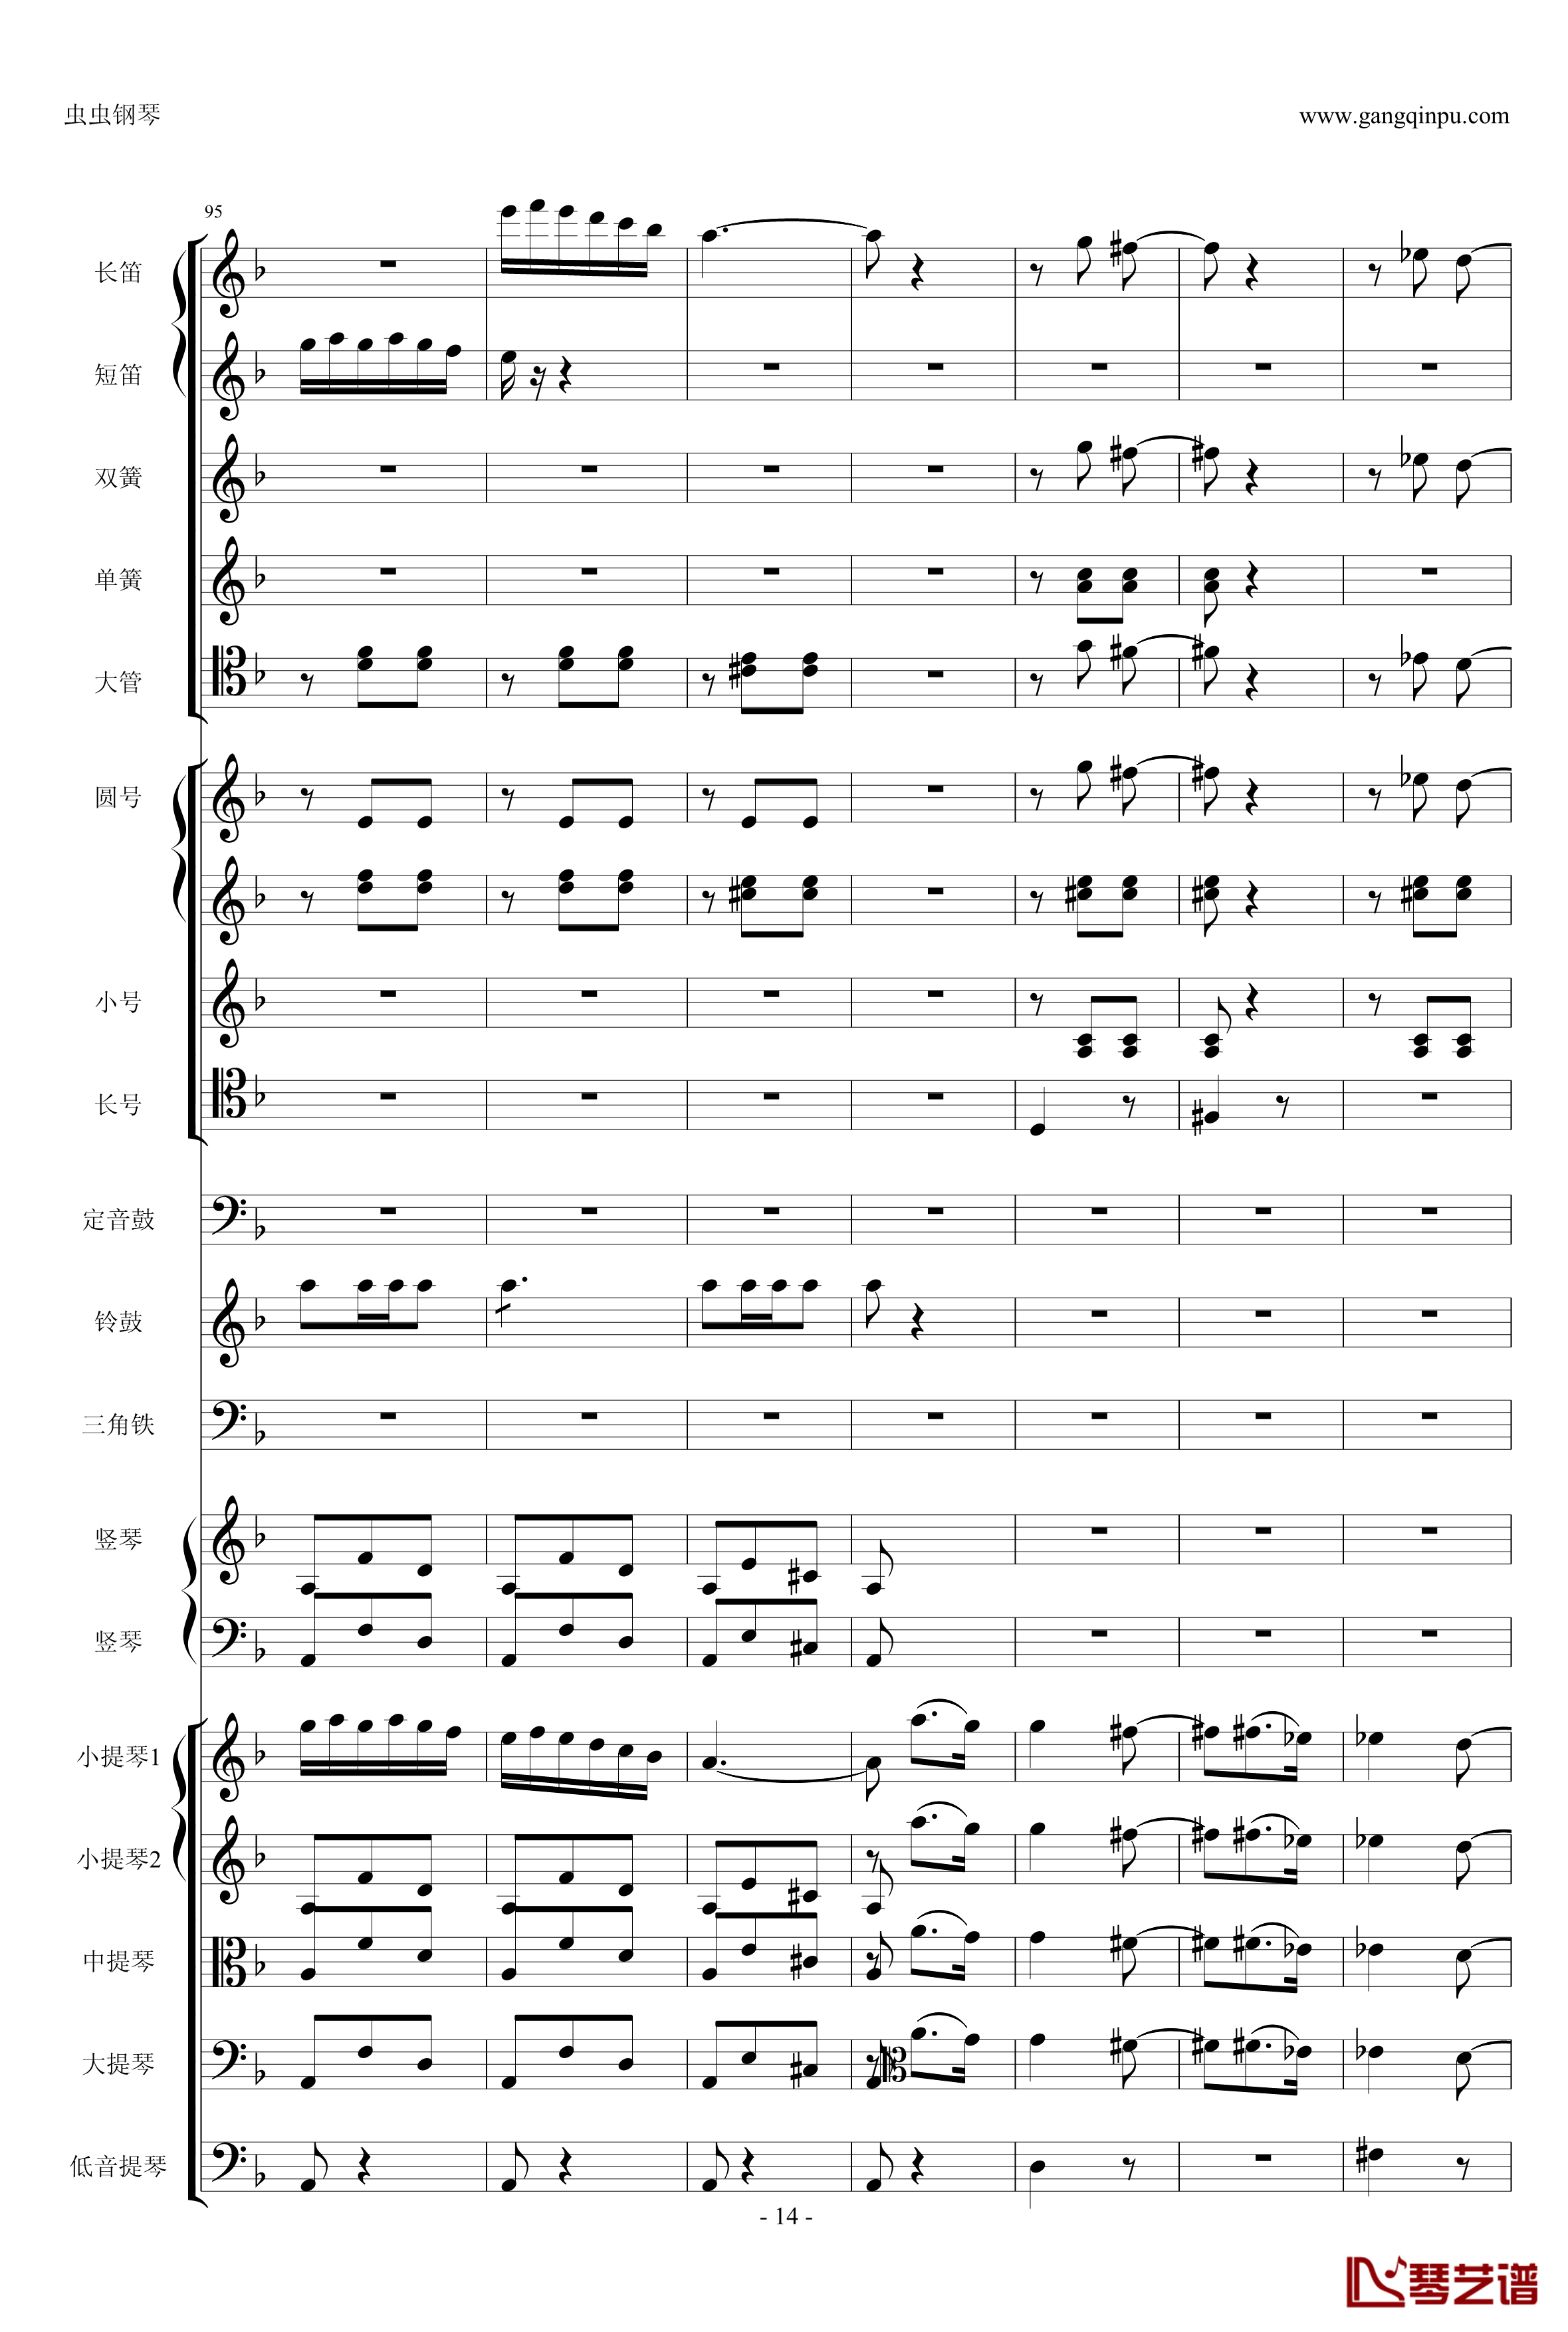 歌剧卡门选段钢琴谱-比才-Bizet- 第四幕间奏曲14